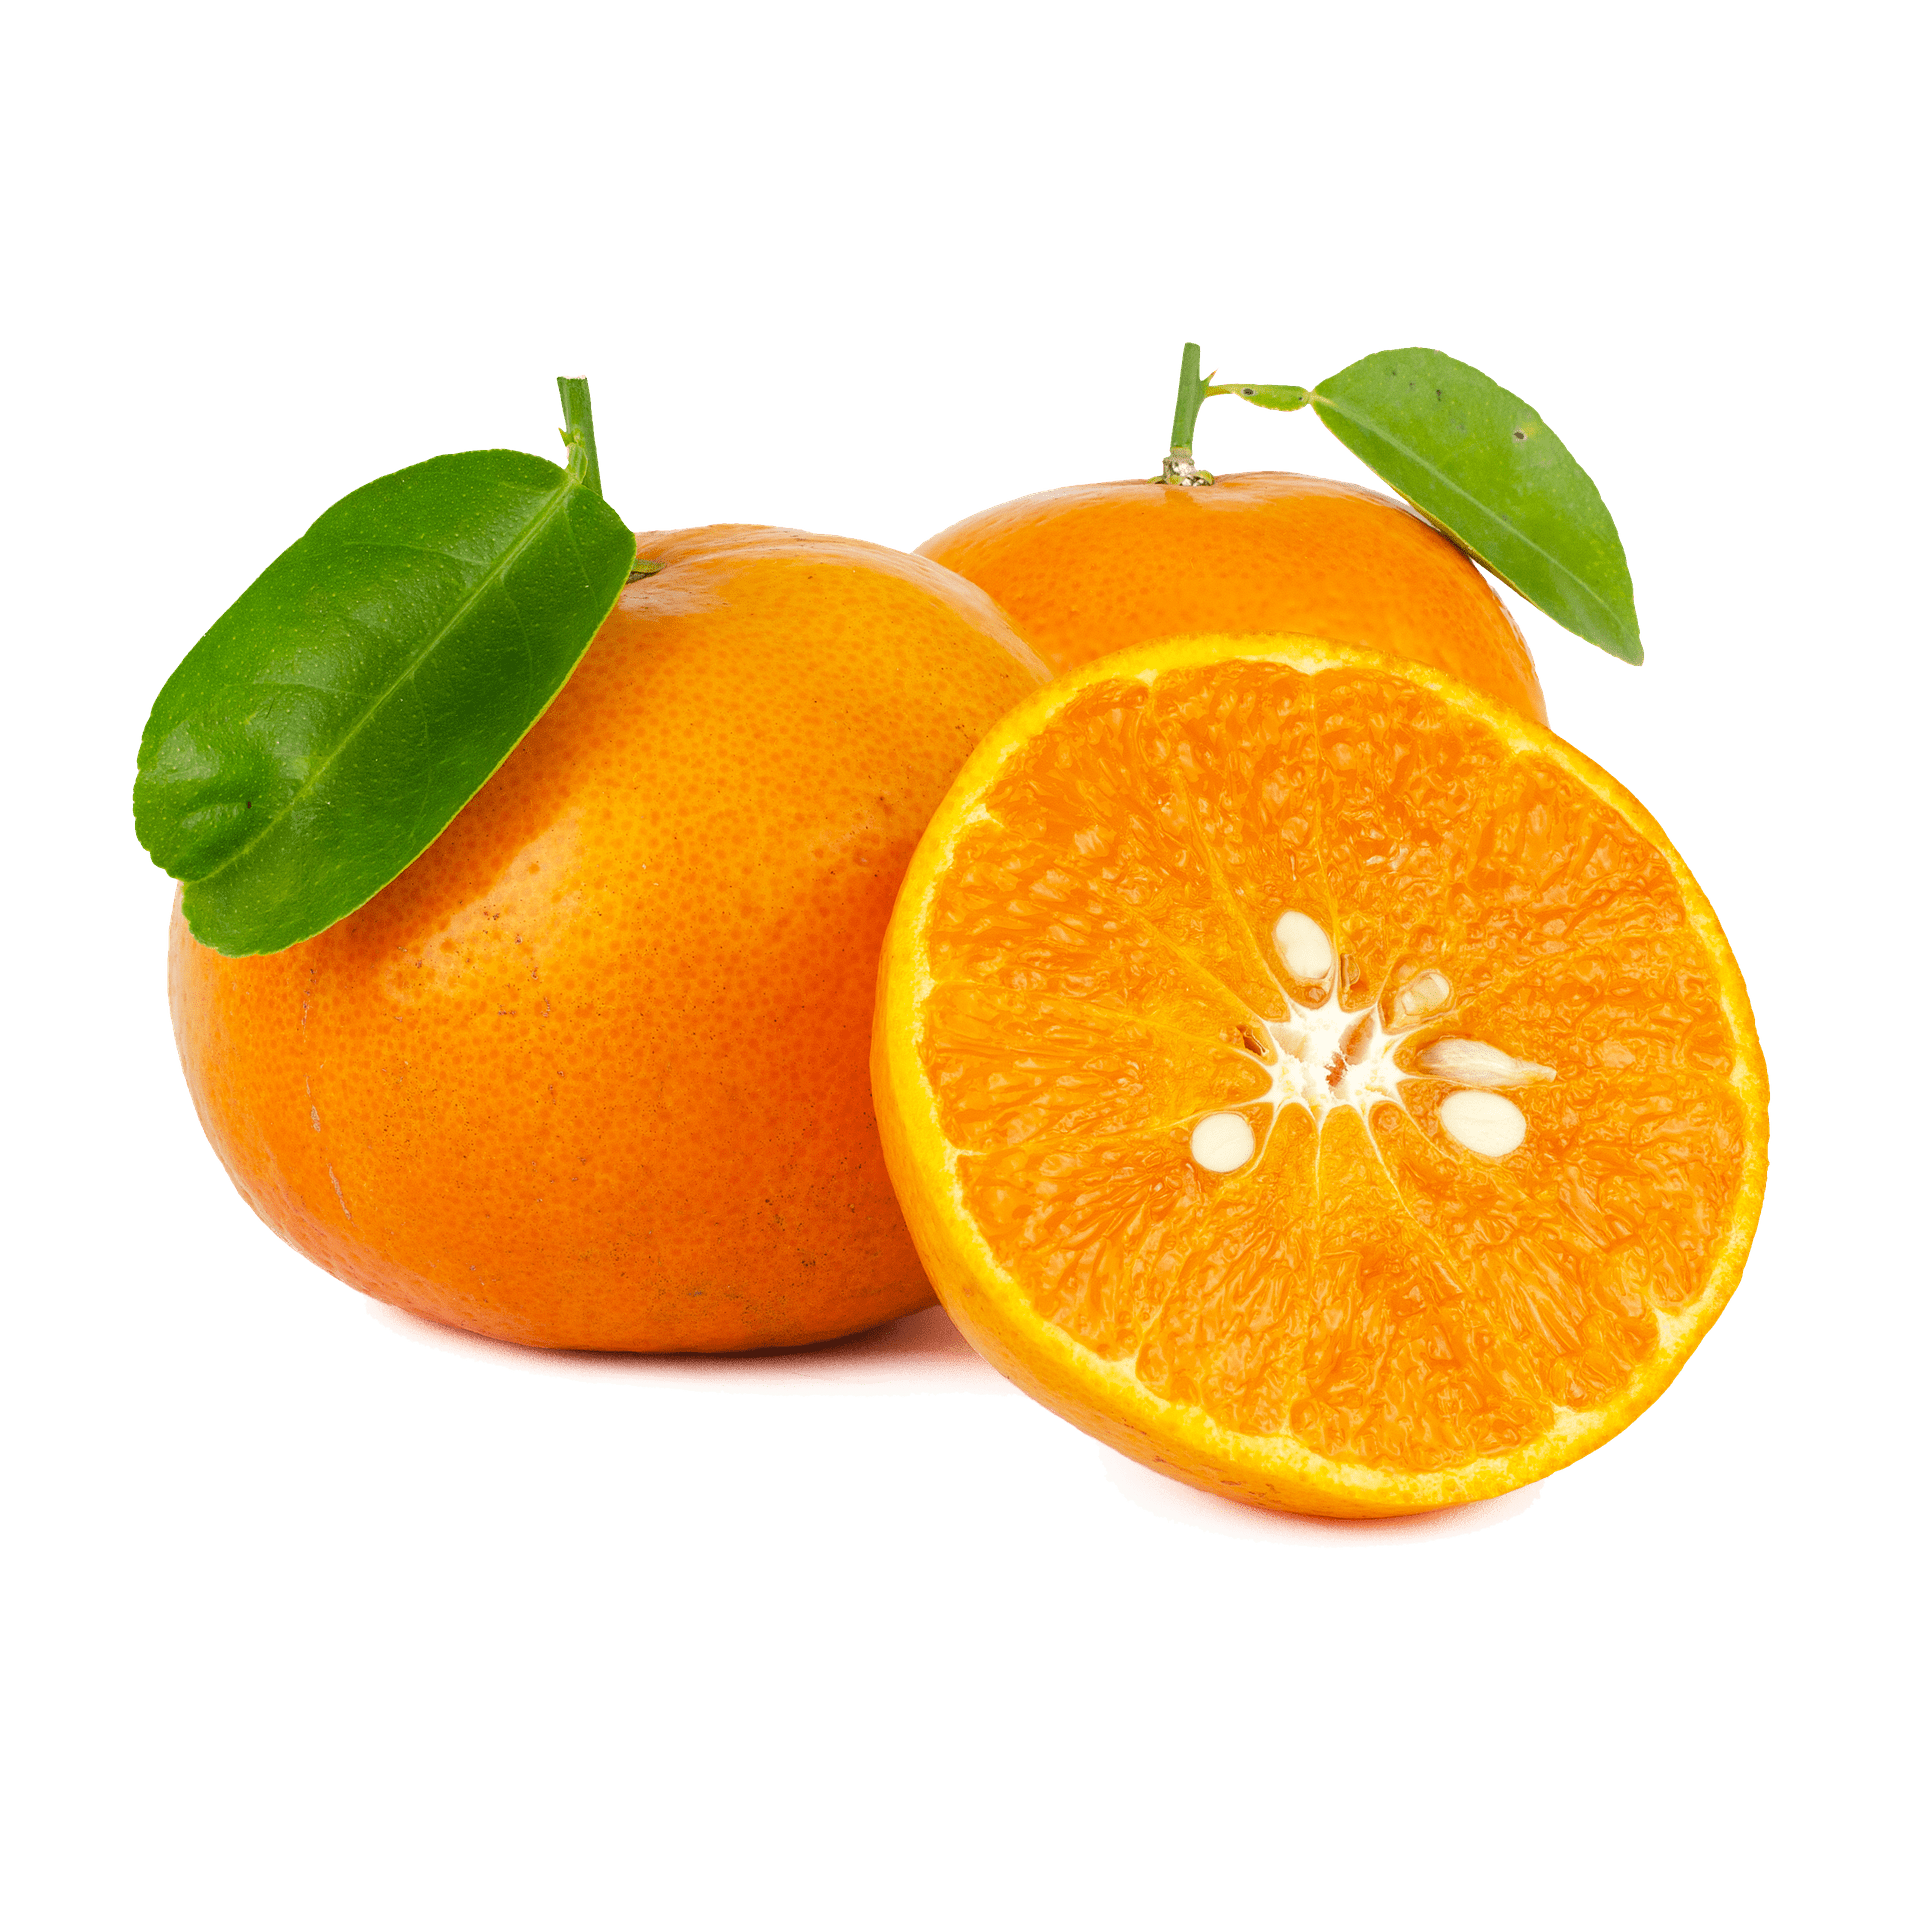 Апельсин Fresh Citrus. Egyptian Citrus мандарины. Орендж апельсин а мандарин. Апельсин на белом фоне. Мандарин каталог товаров